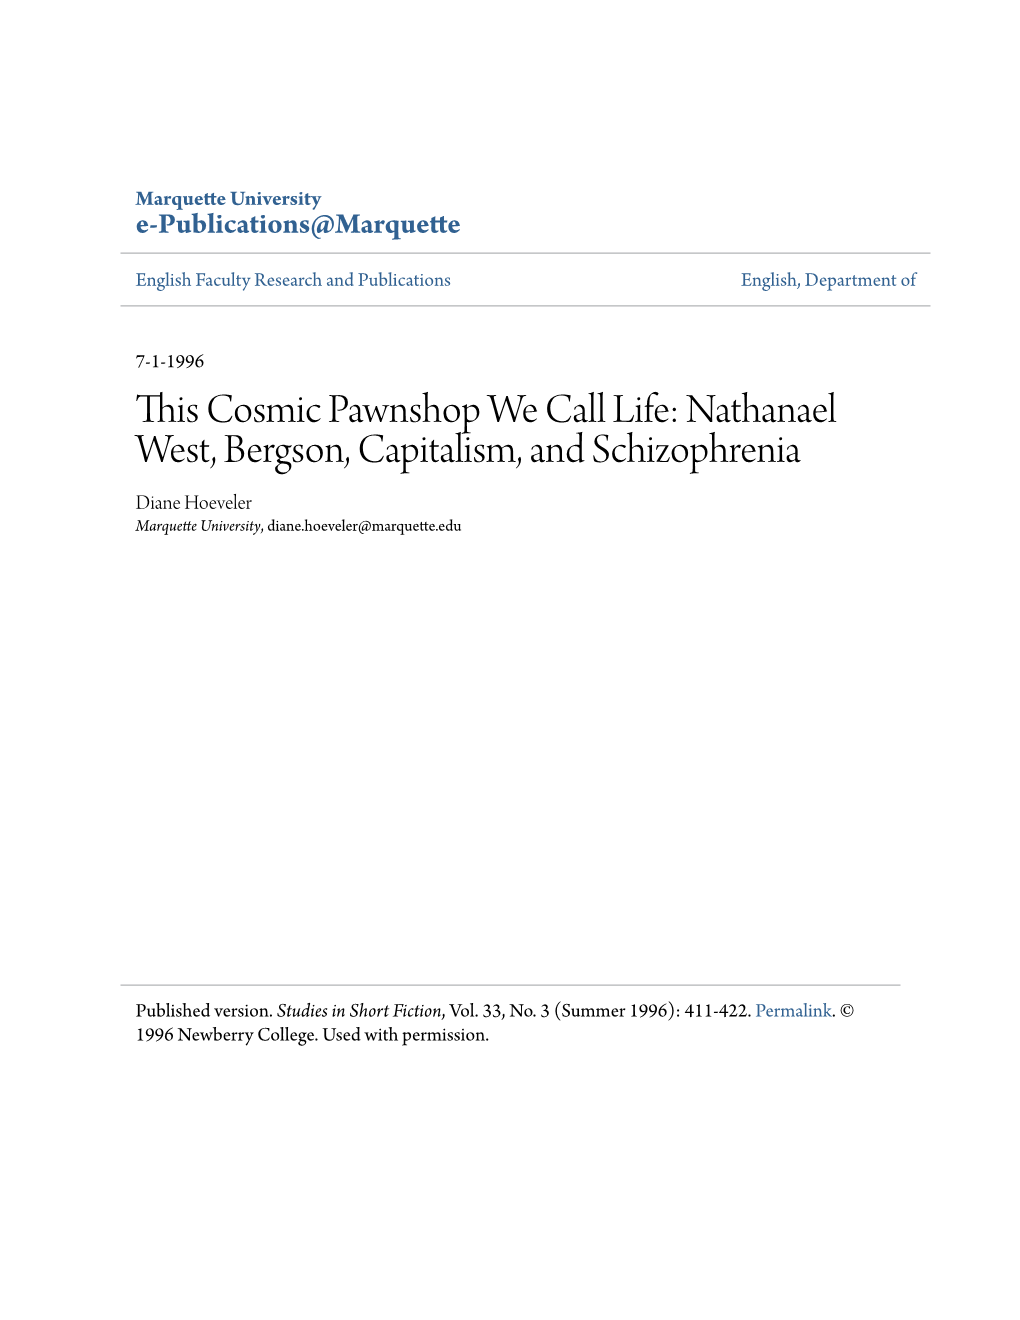 Nathanael West, Bergson, Capitalism, and Schizophrenia Diane Hoeveler Marquette University, Diane.Hoeveler@Marquette.Edu